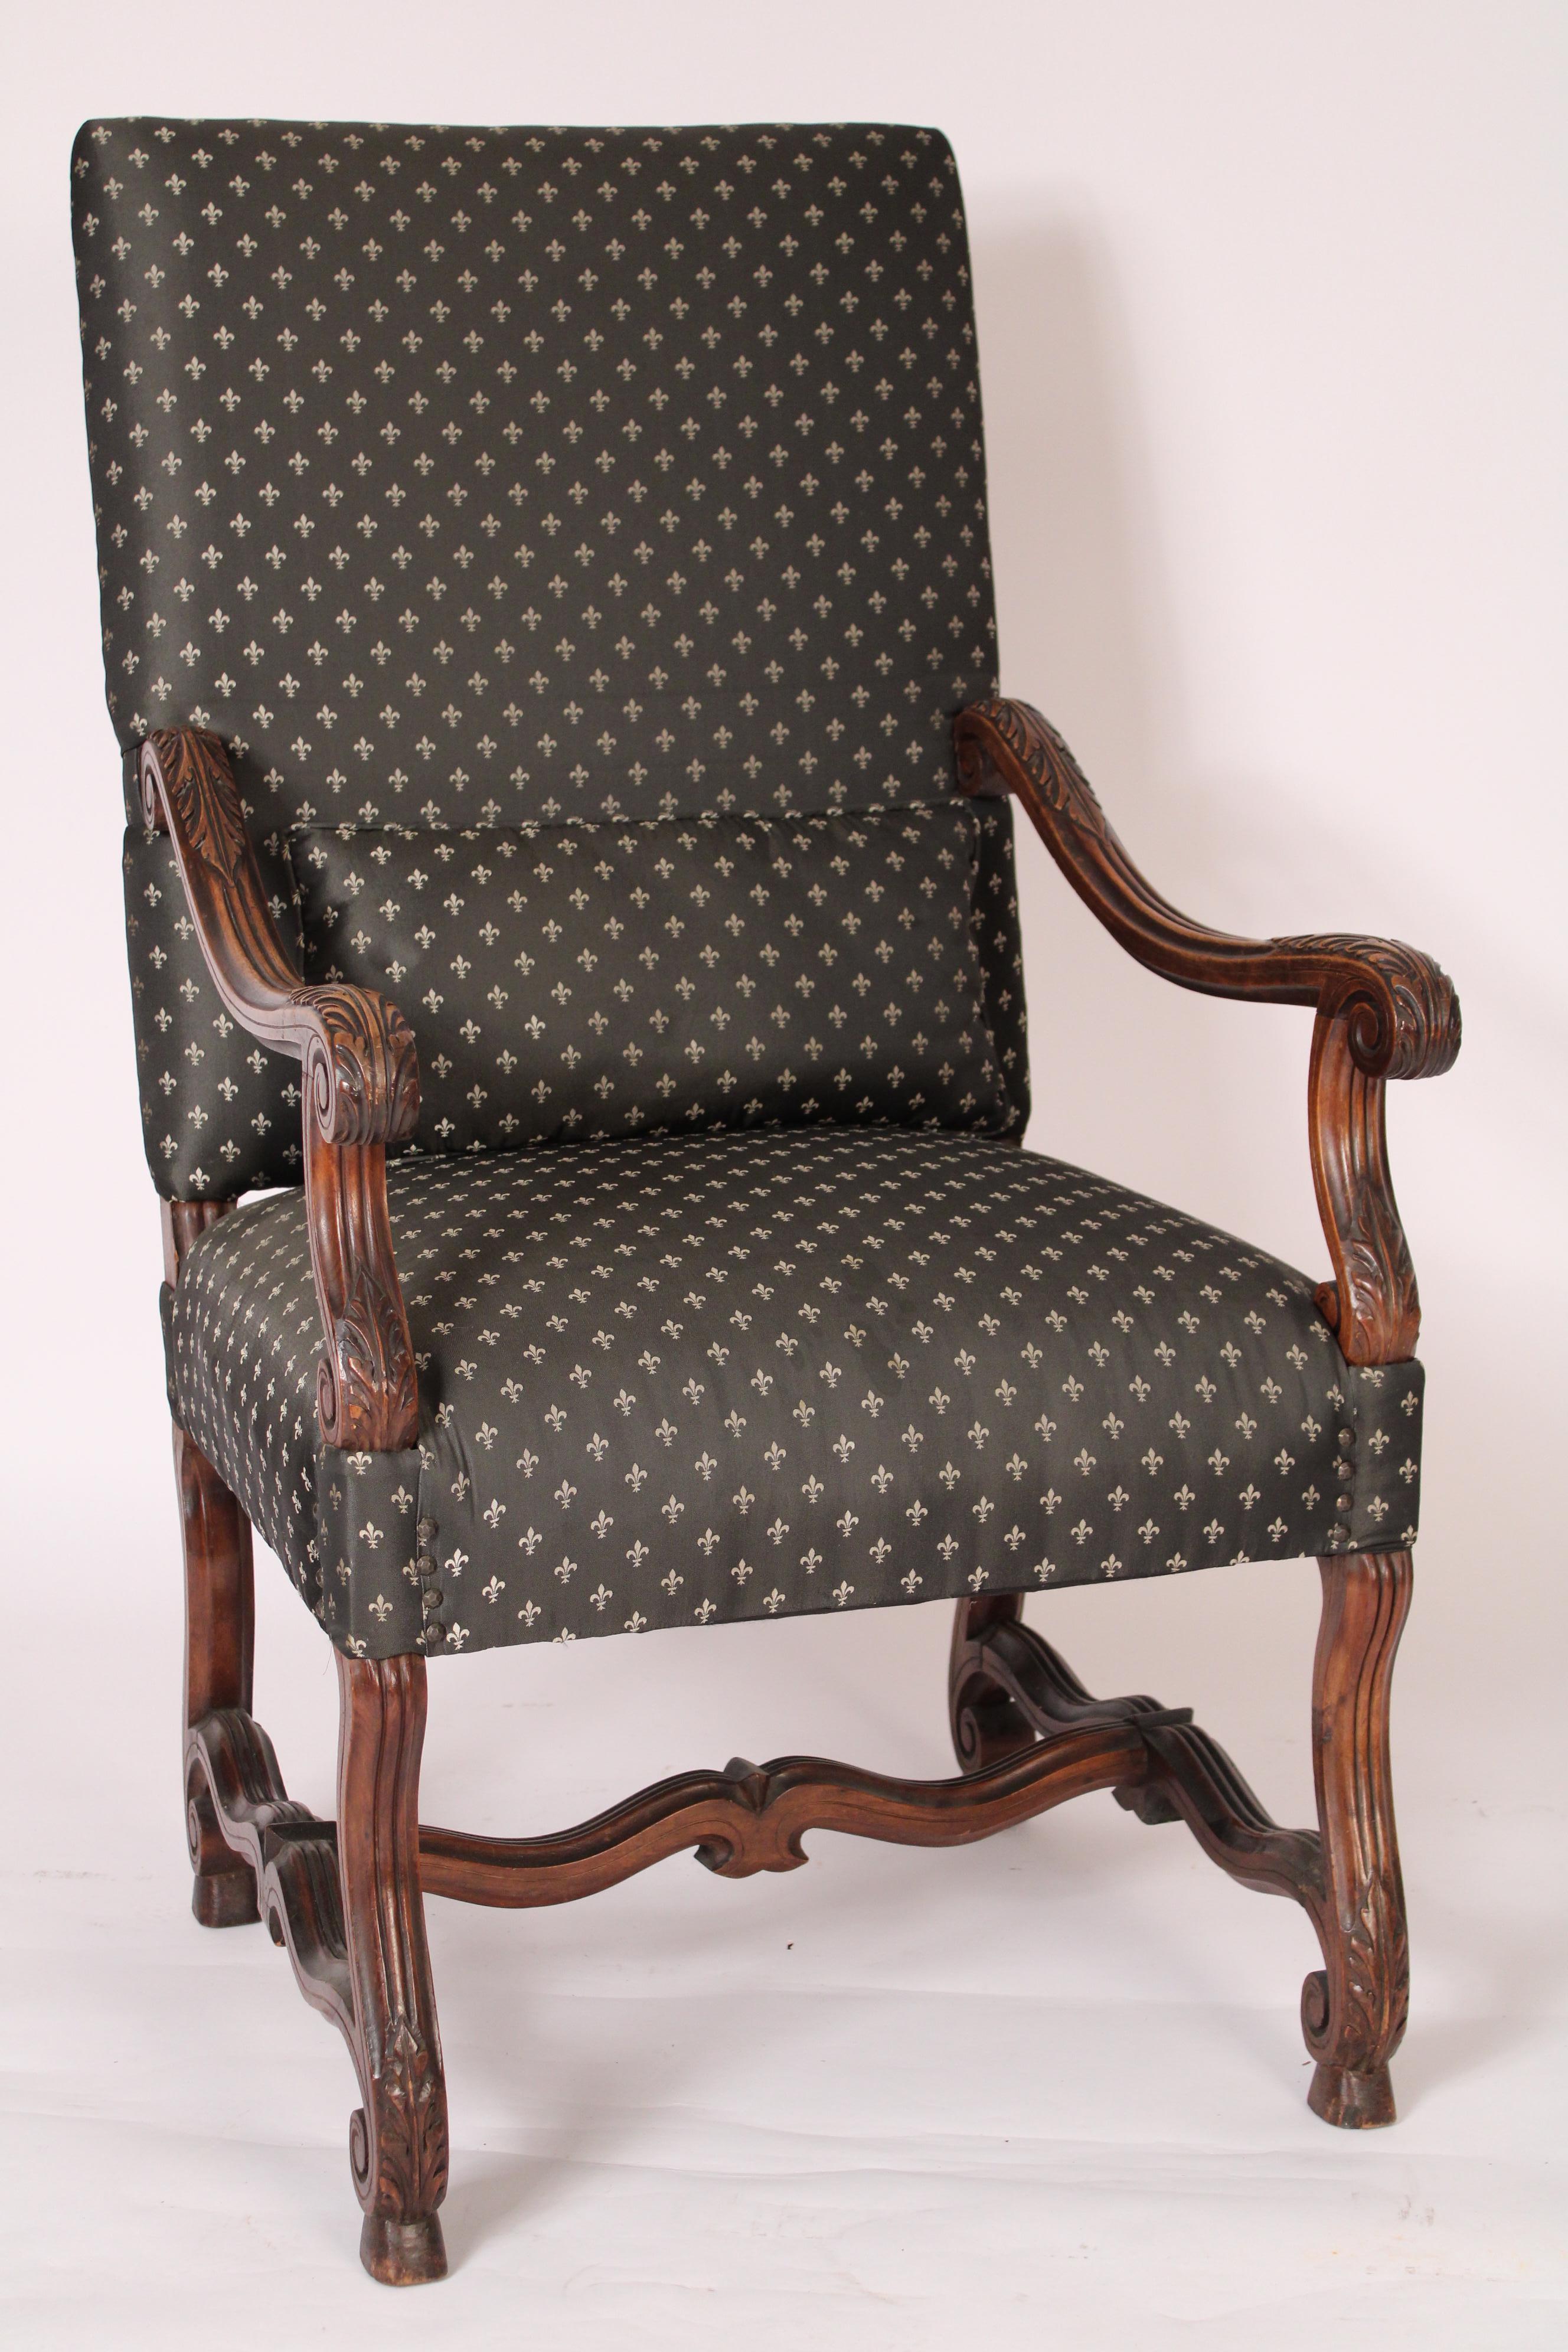 Paire de fauteuils en noyer sculpté de style Louis XIV, vers 1900. Les dossiers sont rembourrés et de forme rectangulaire, les accoudoirs et les supports d'accoudoirs sont en forme de serpentin sculpté d'acanthes, les pieds sont en forme de